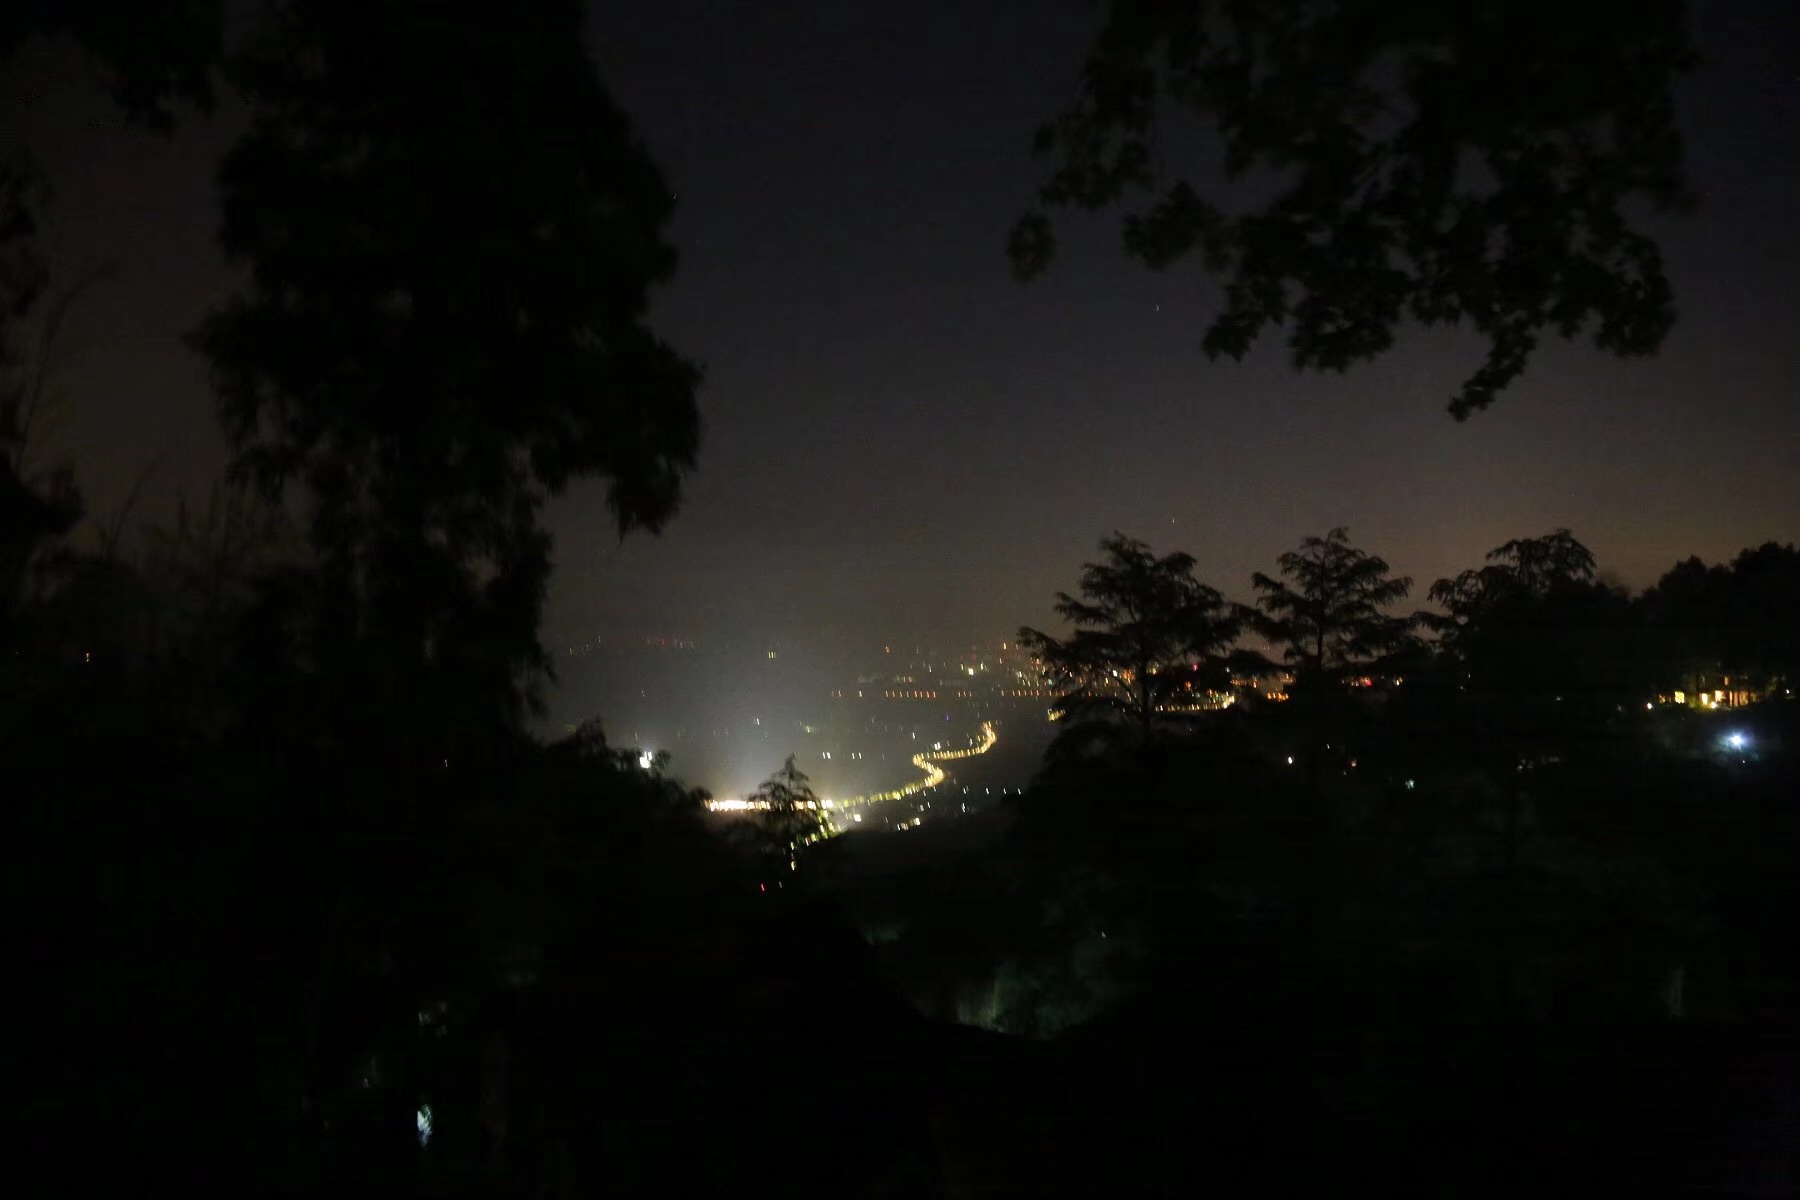 晚上在酒店平台,远处是灯火阑珊,我们远离尘嚣,在山里度过简单安静的